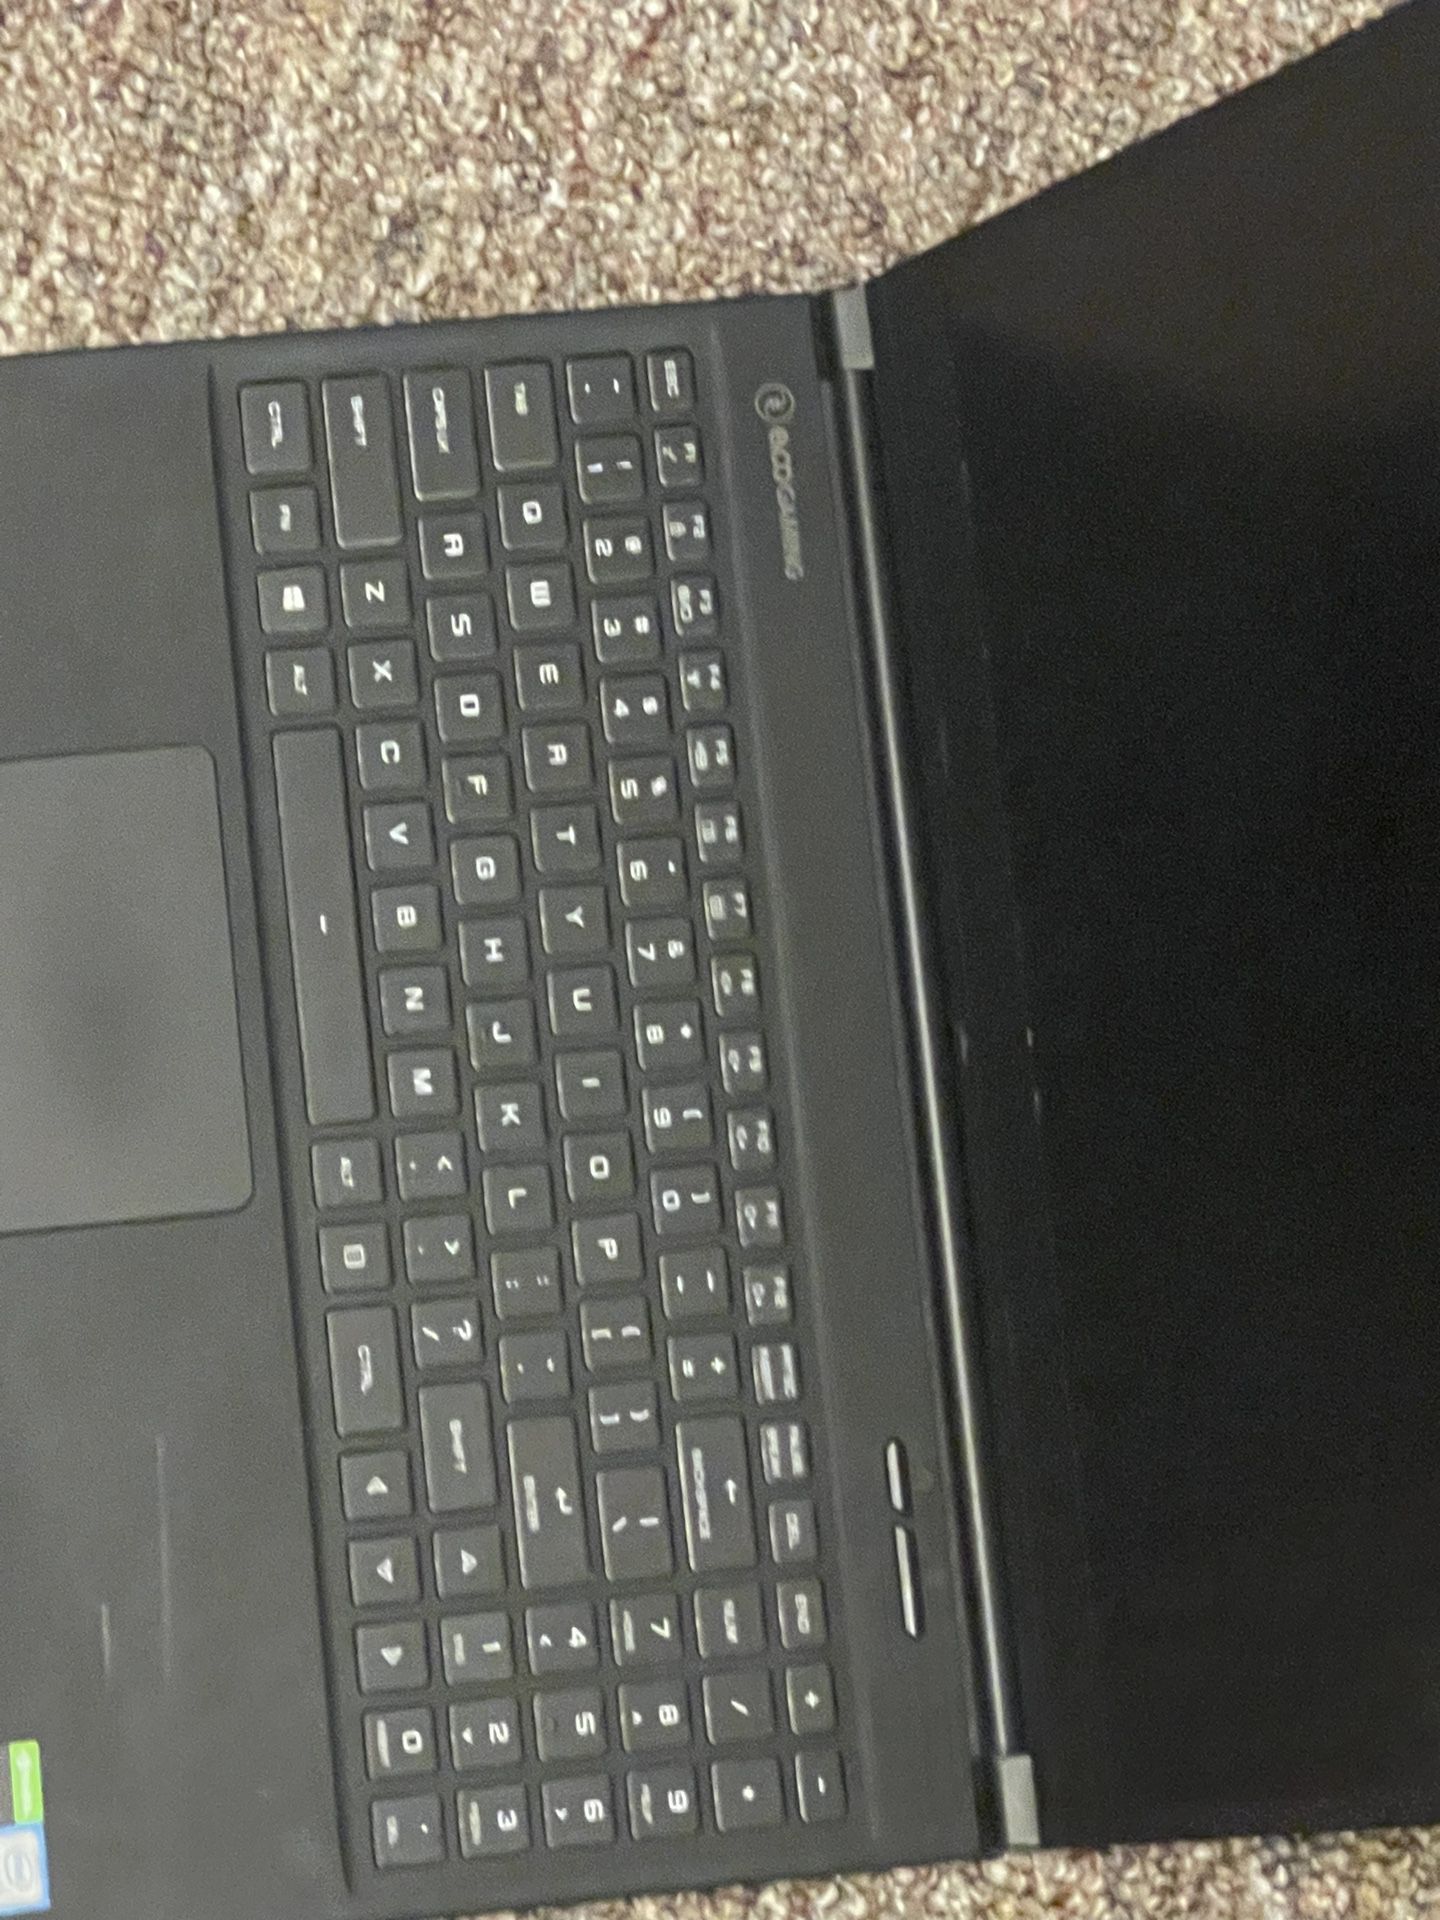 Evoo Laptop Computer